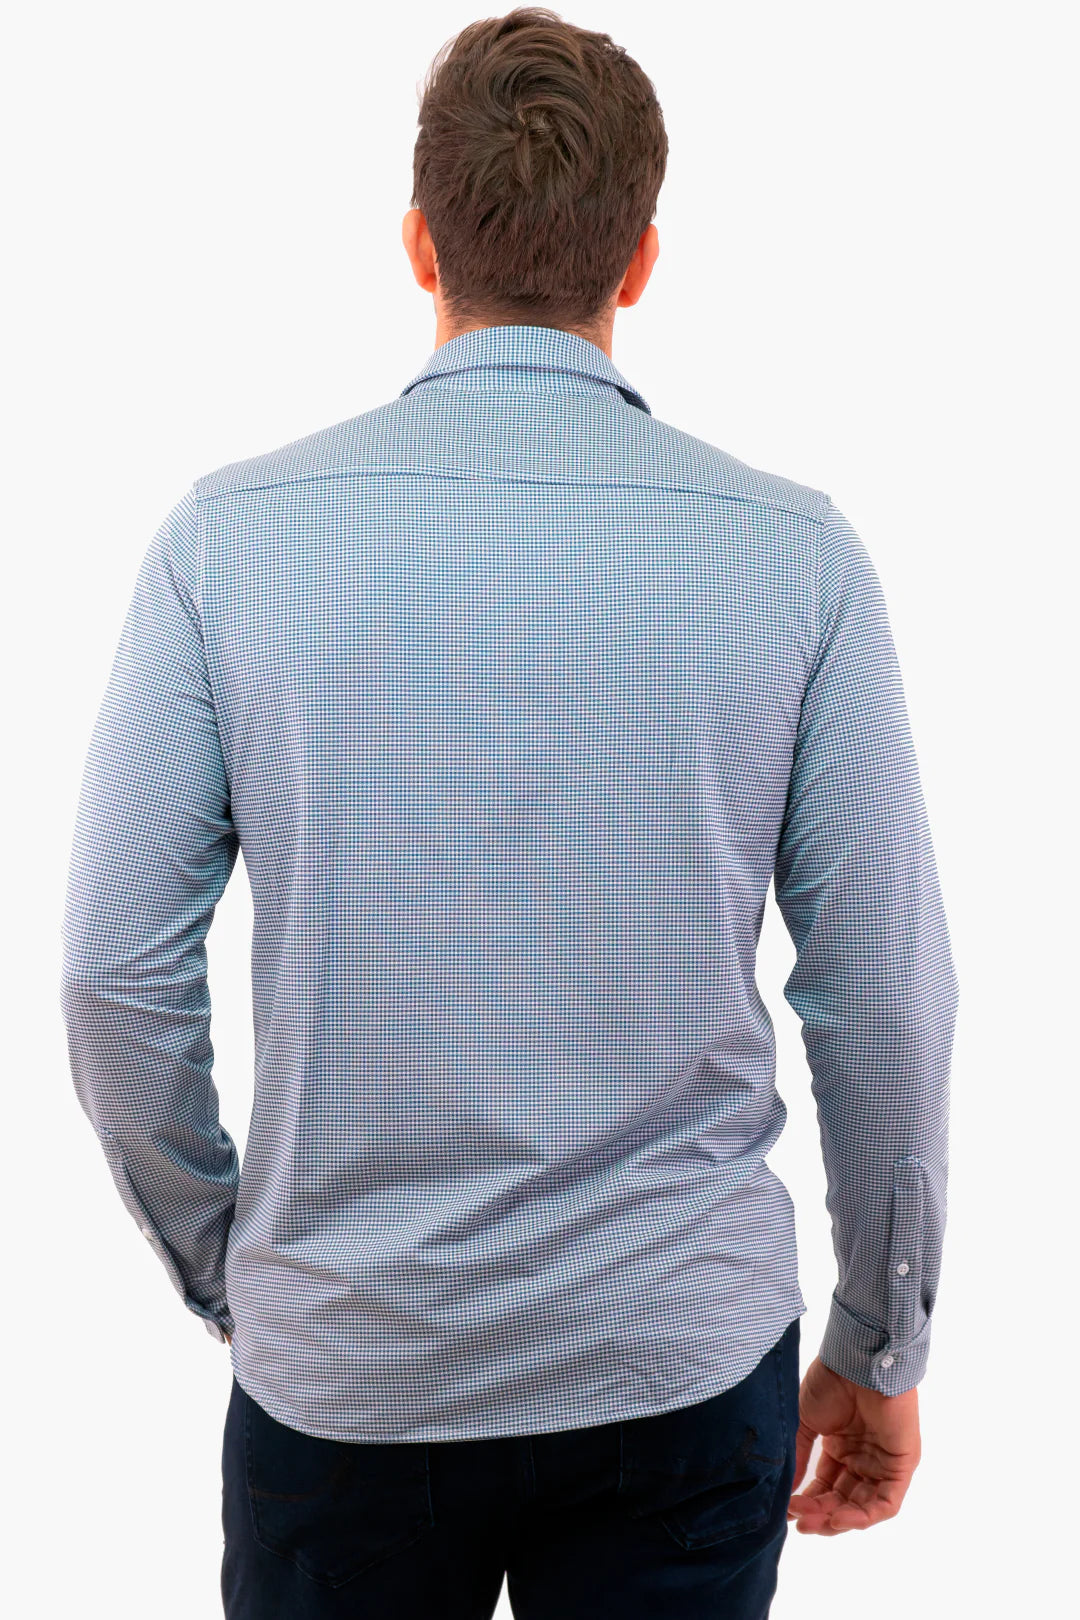 Michael Kors Stretch Woven Shirt